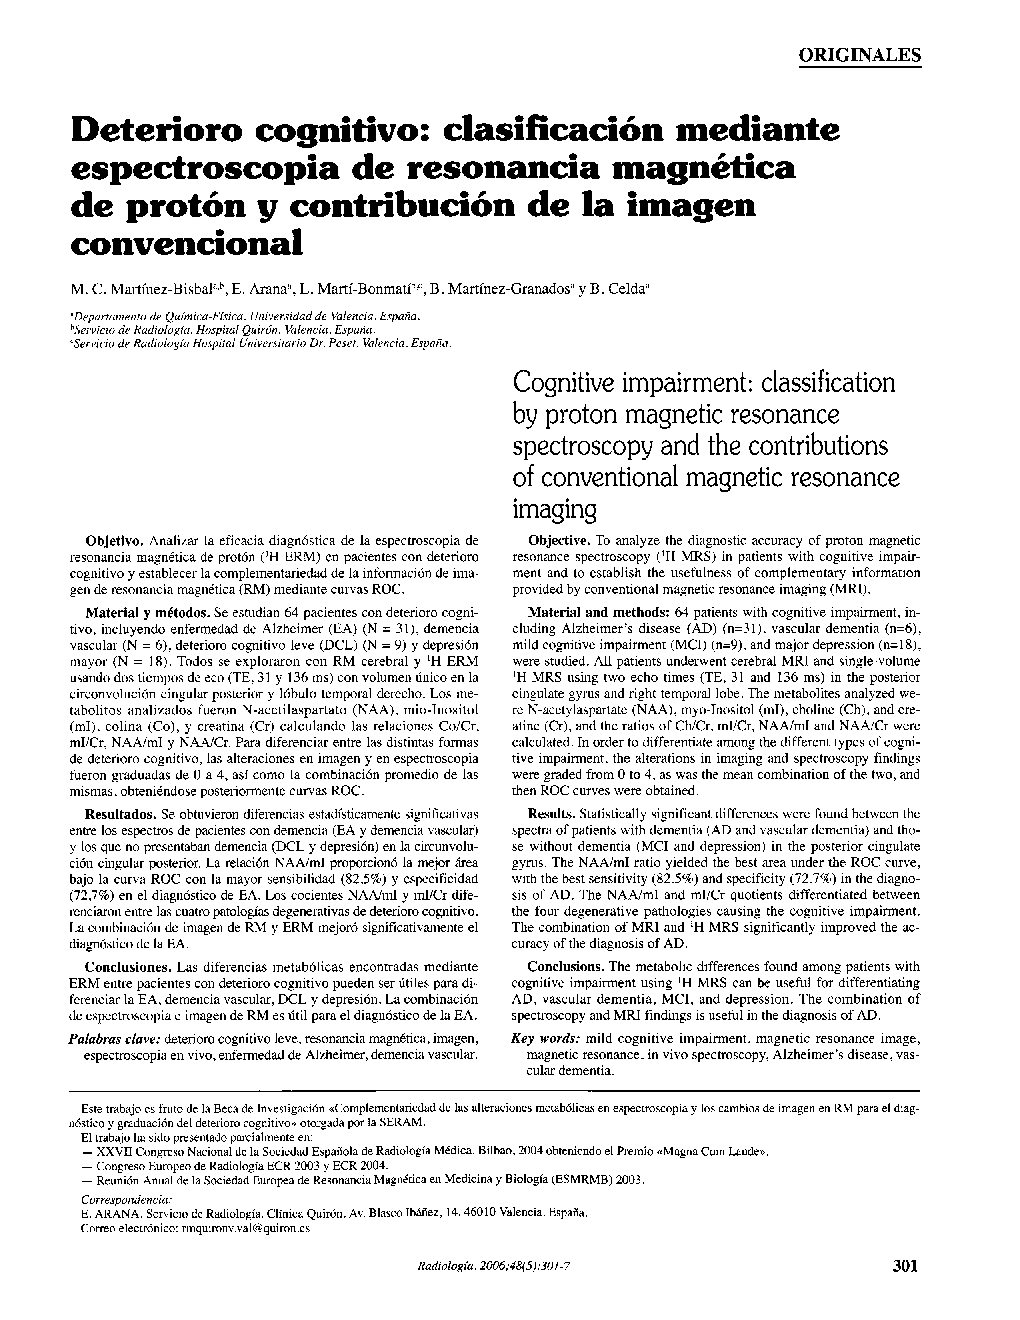 Deterioro cognitivo: clasificación mediante espectroscopia de resonancia magnética de protón y contribución de la imagen convencional